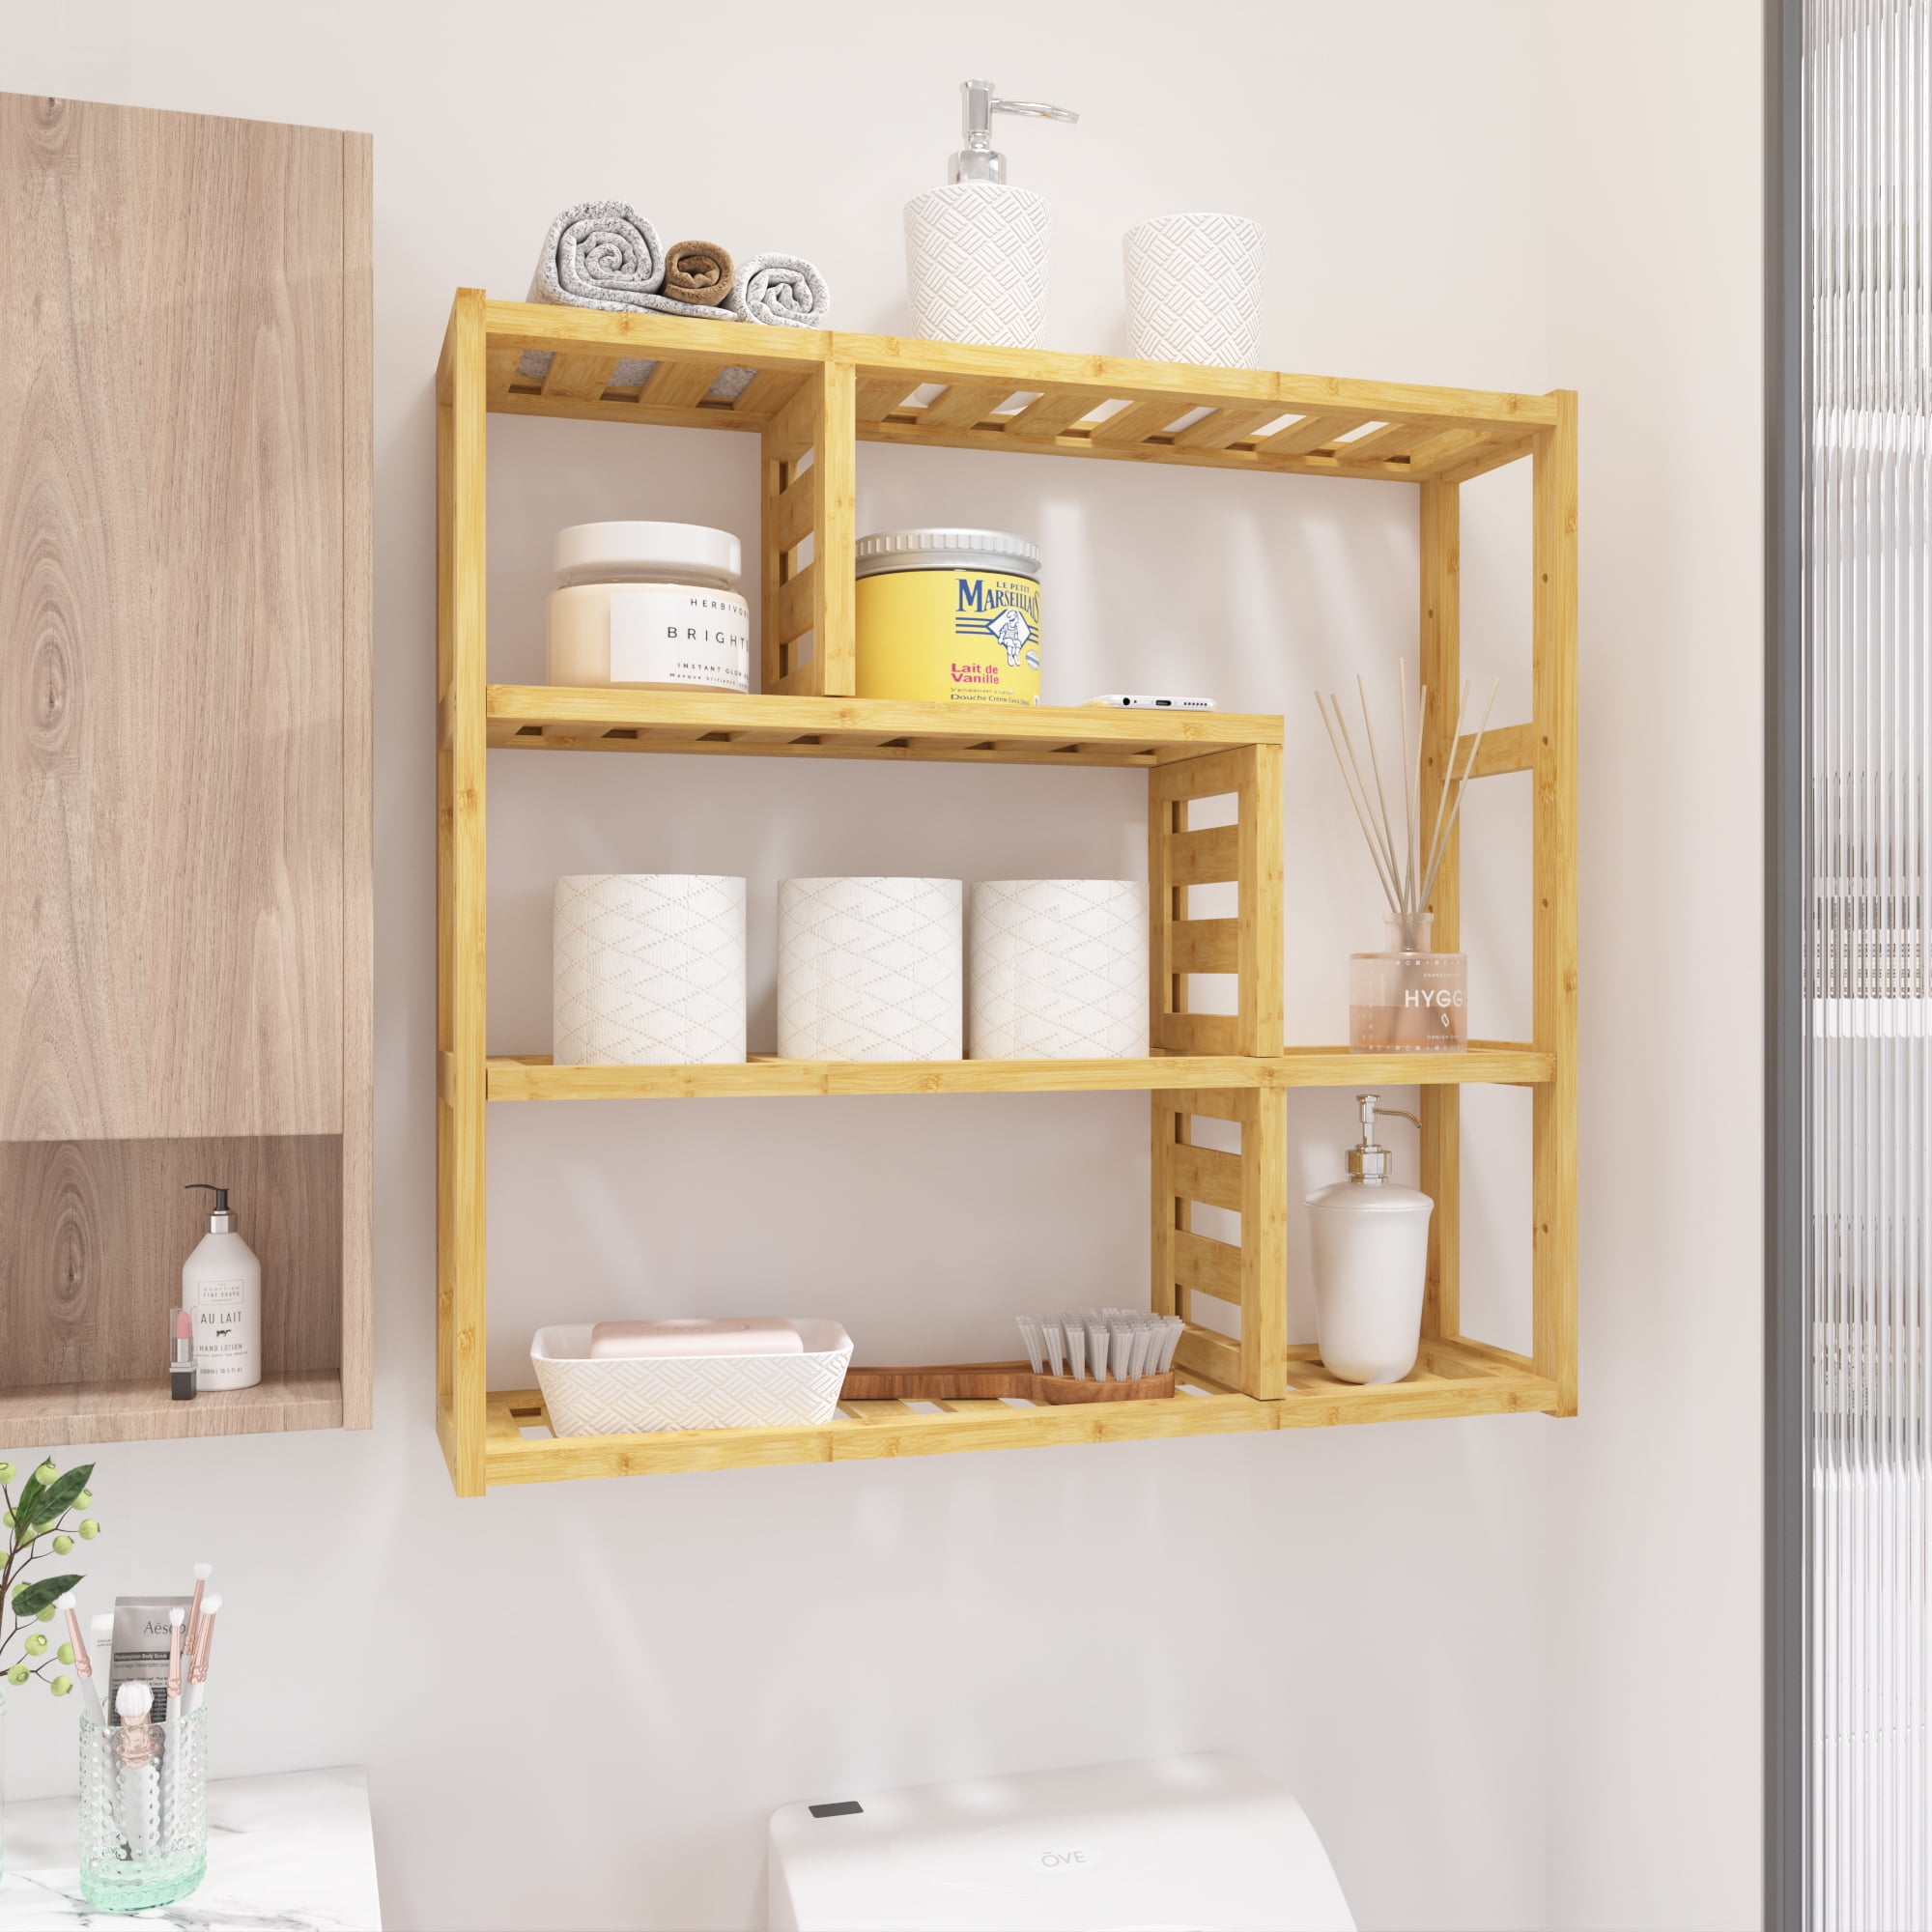 Shelf Over Tub Design Ideas